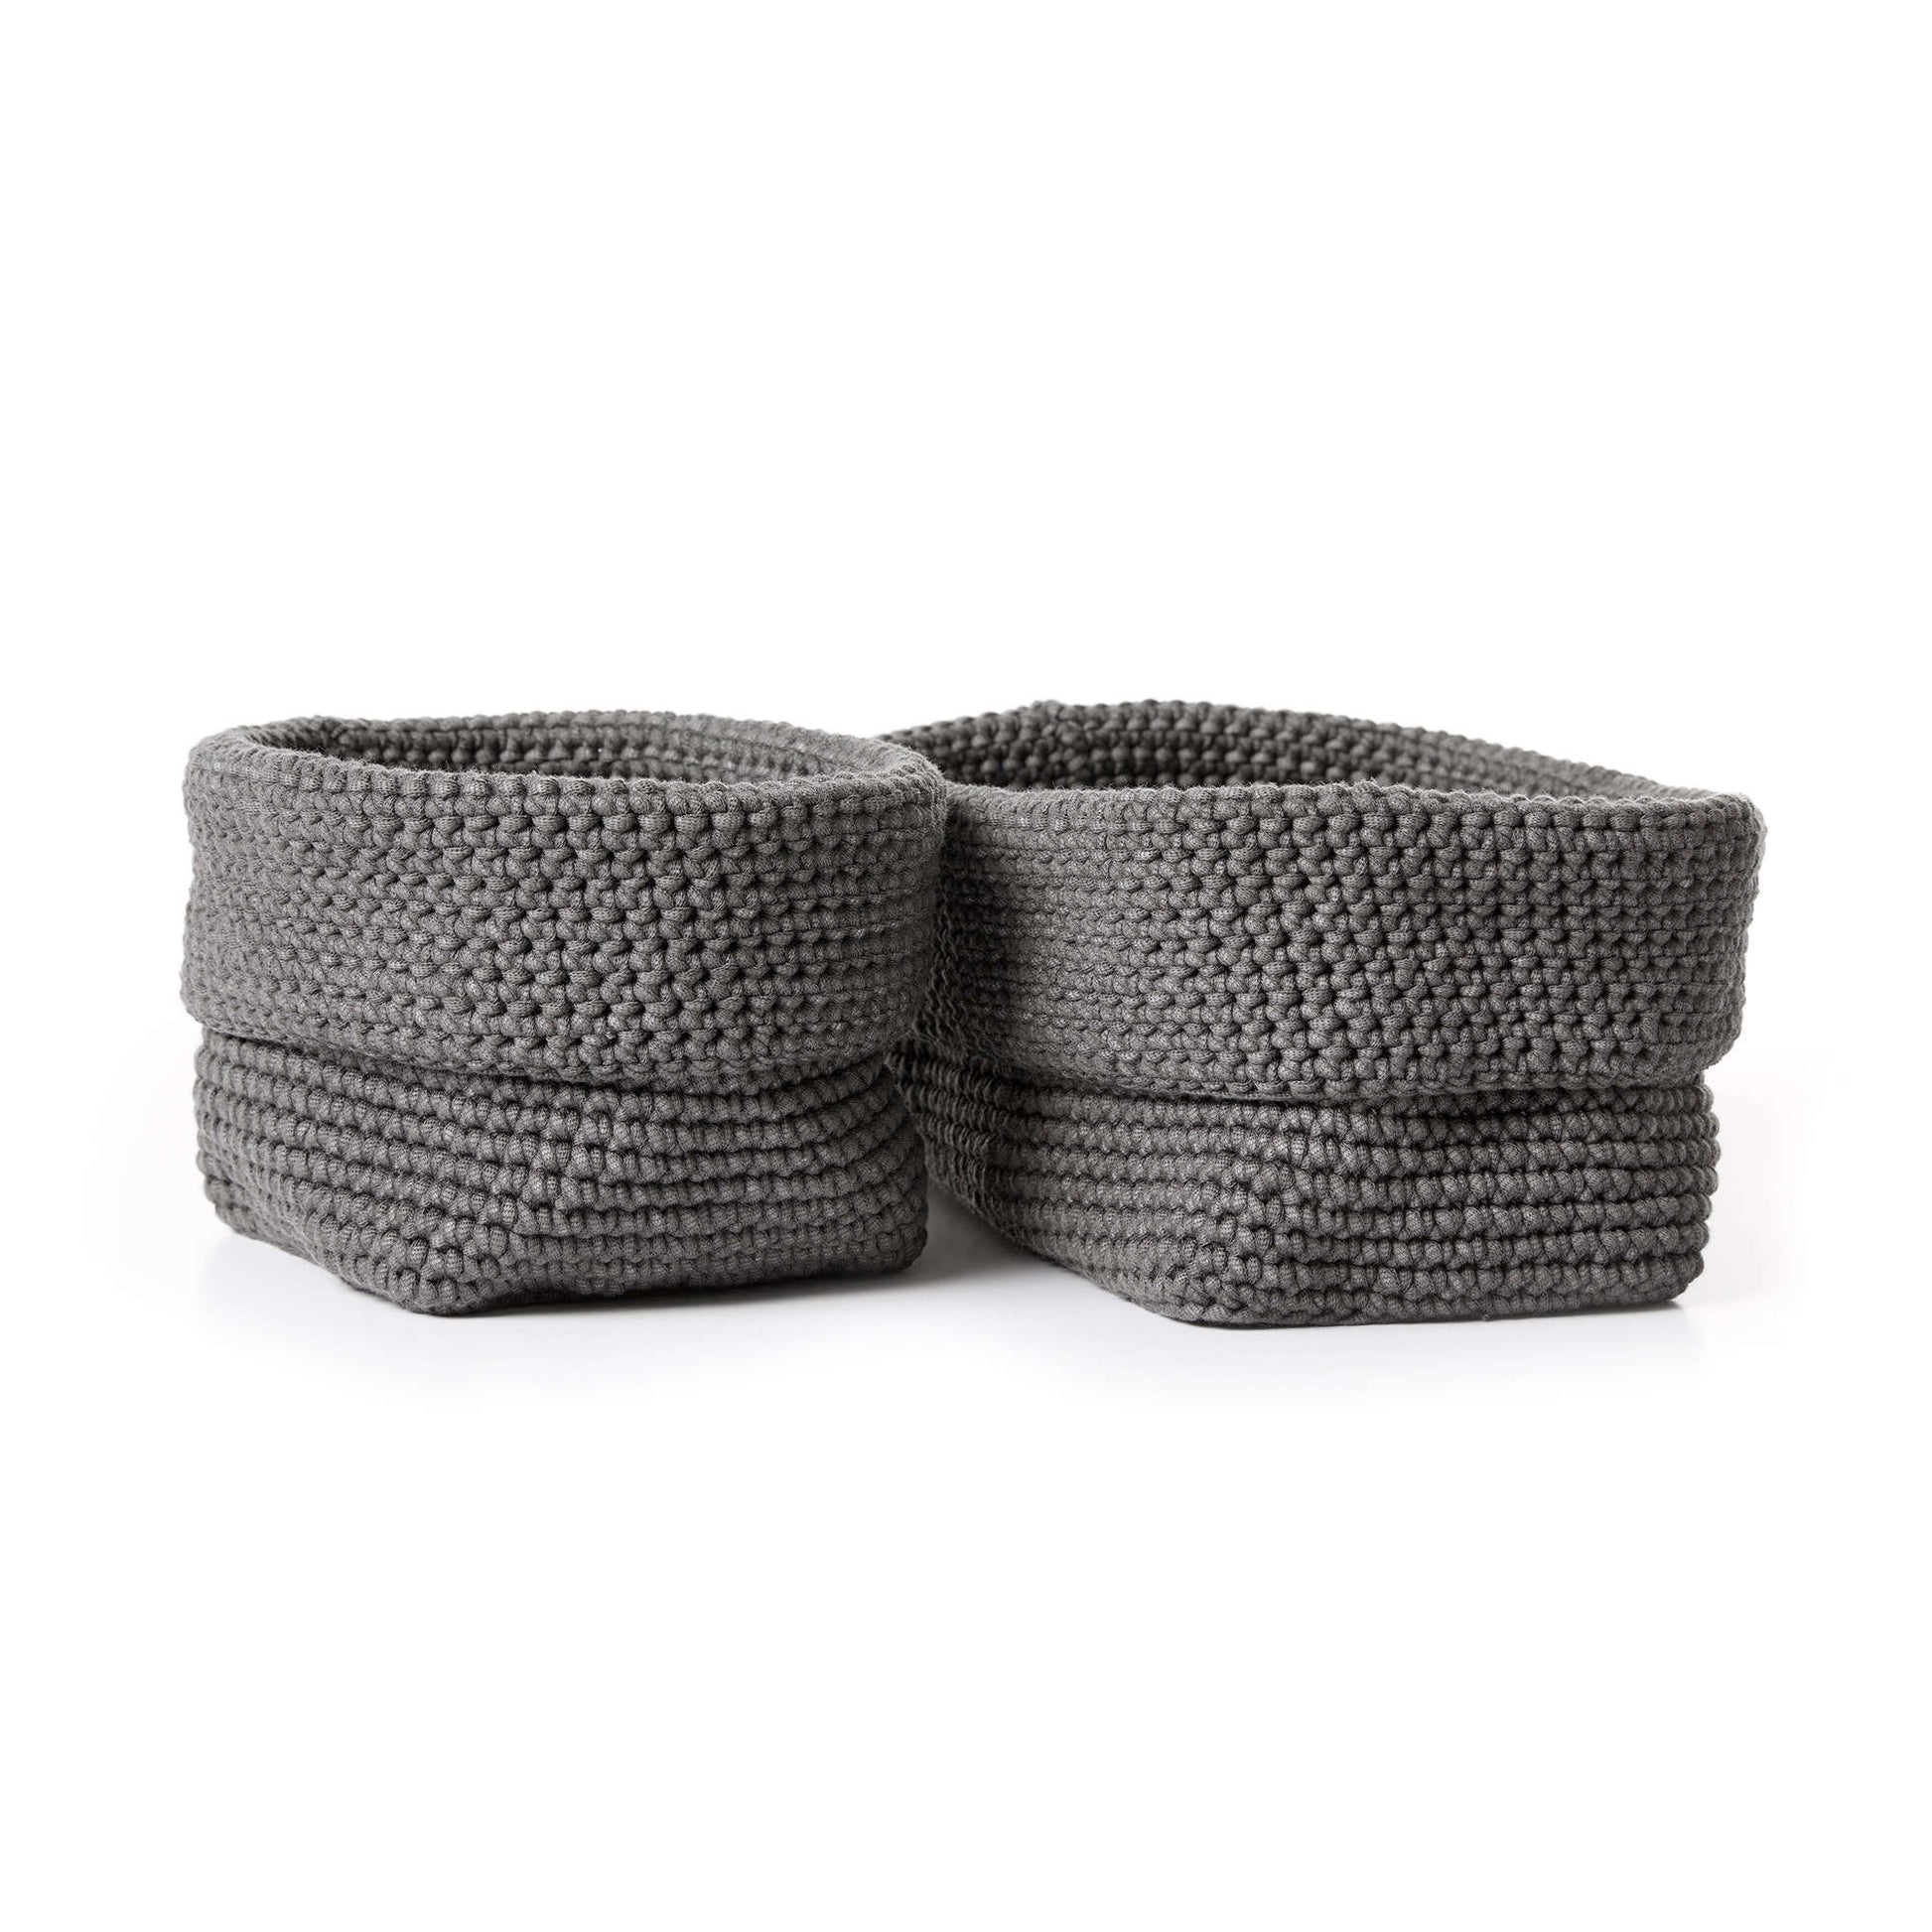 Bernat Crochet Cutlery Baskets Small